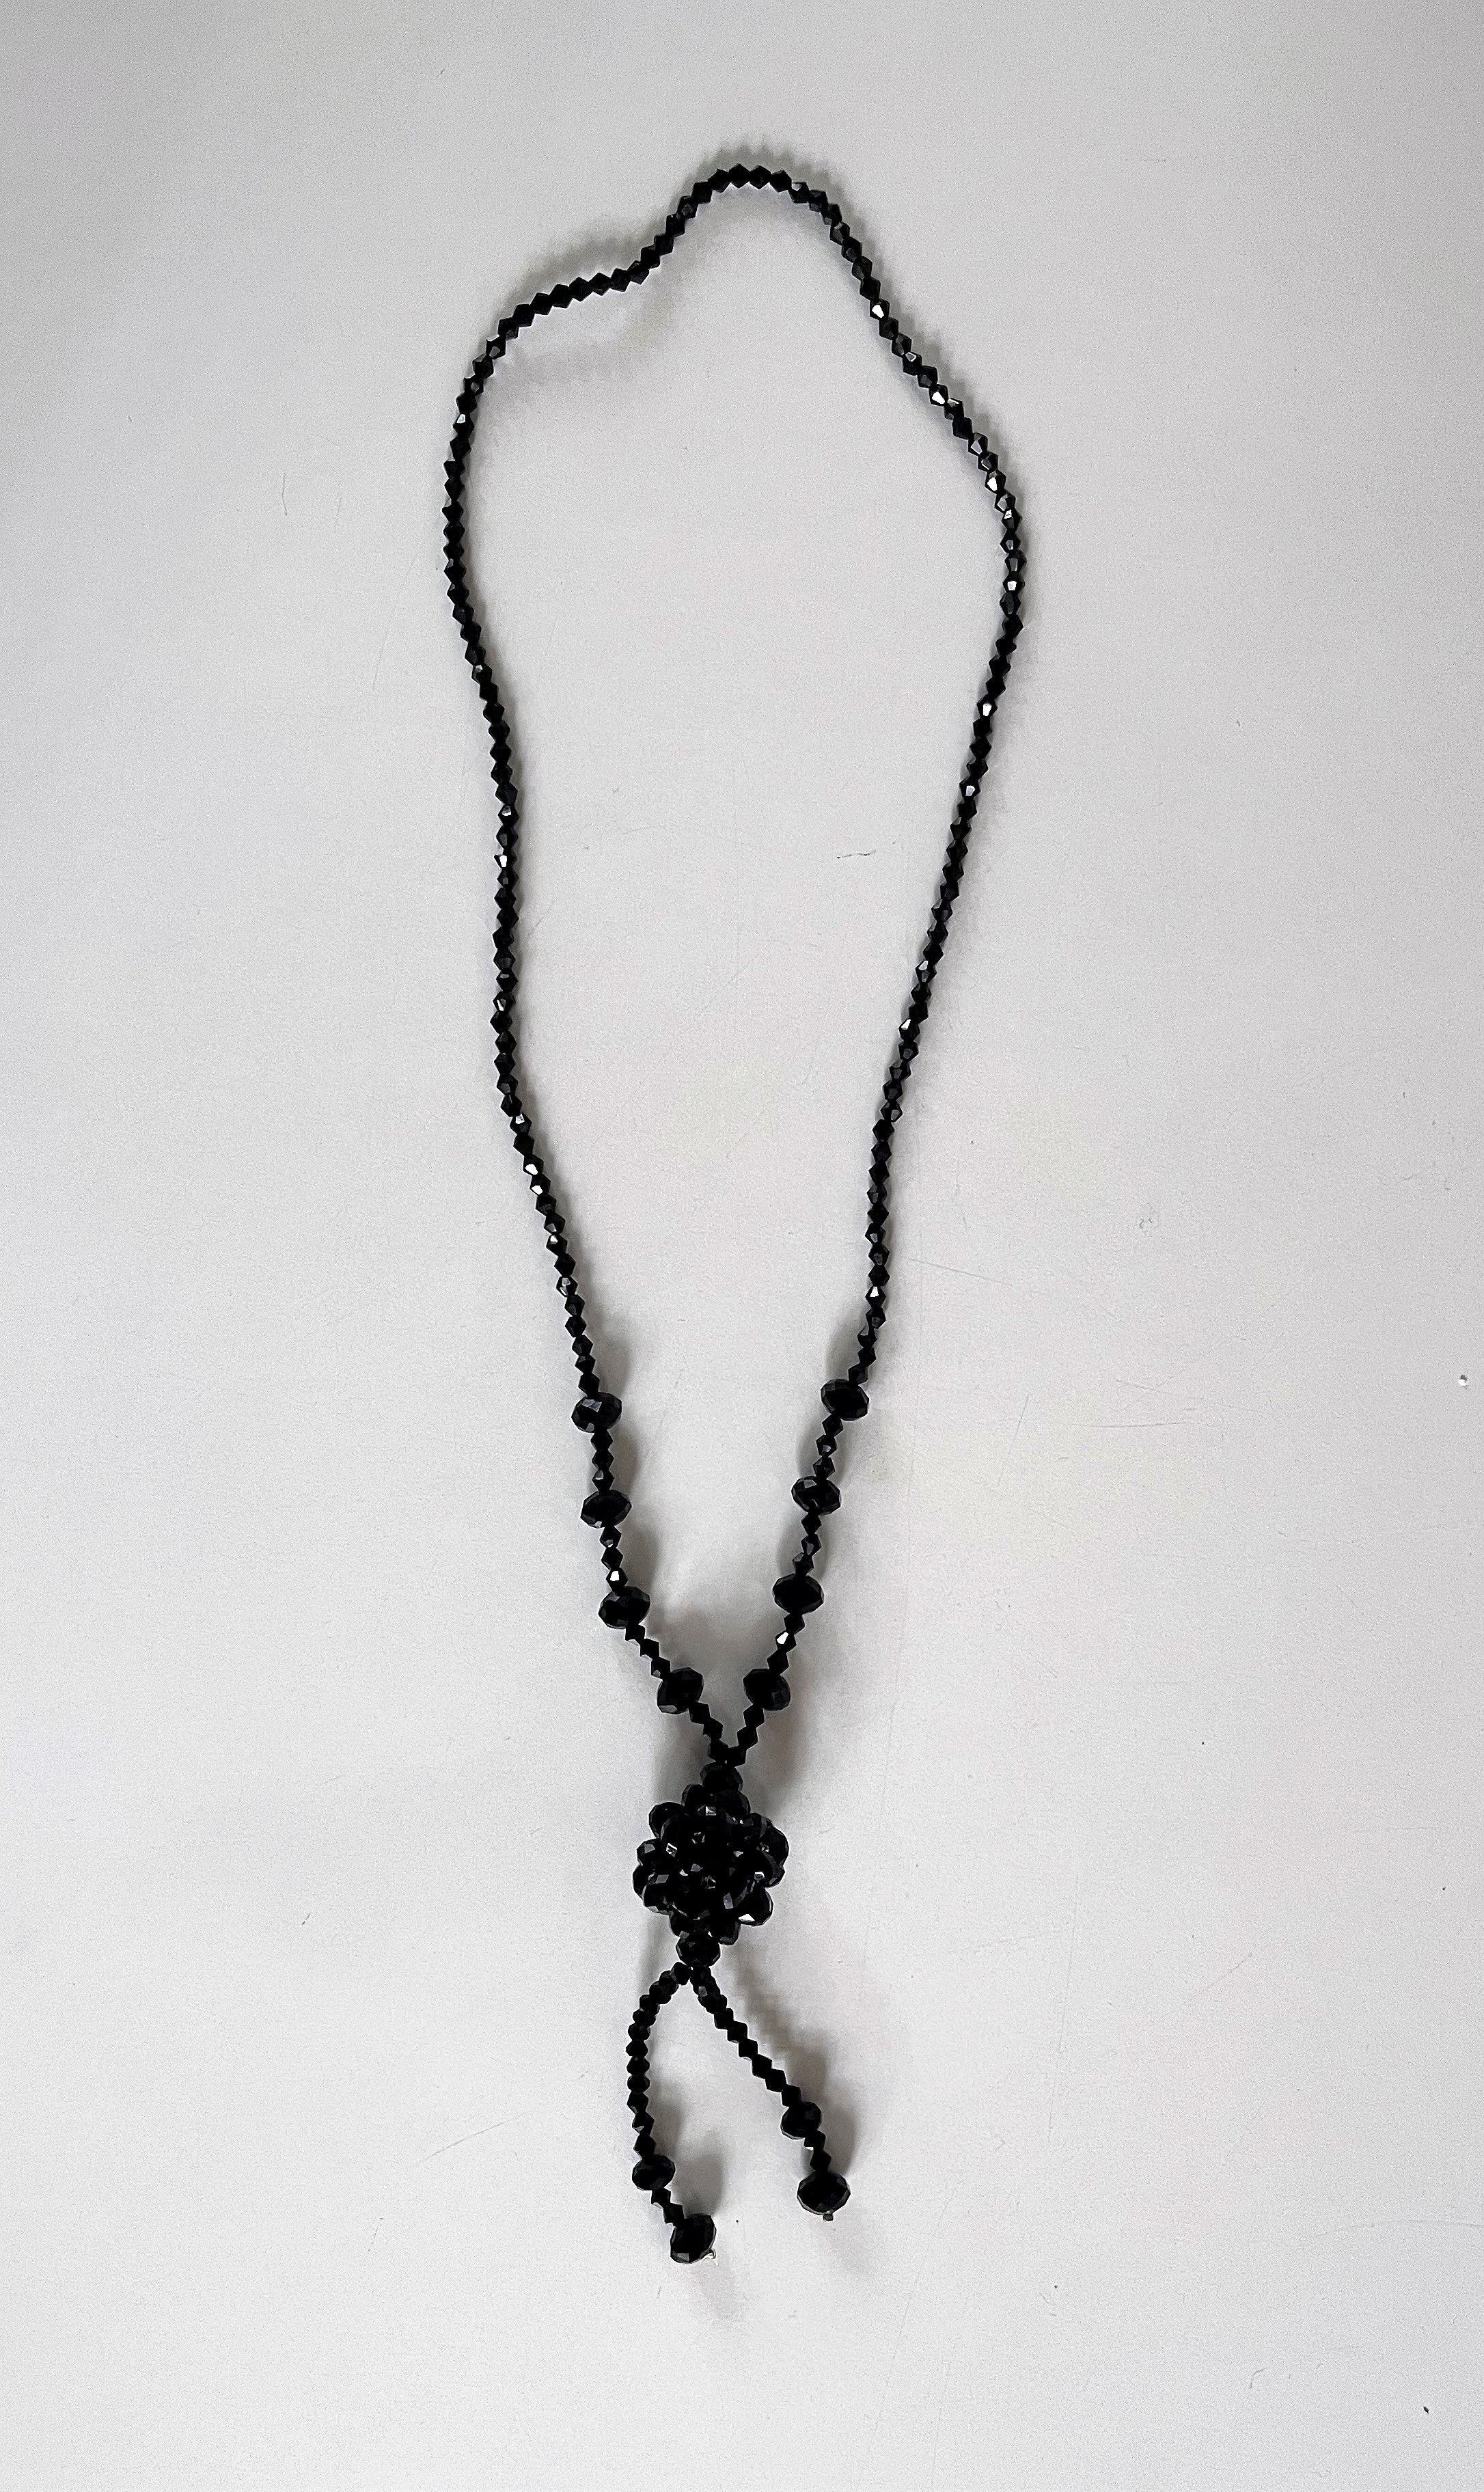 Schwarze Kette (Trauerschmuck) (Museum für Sepulkralkultur CC BY)